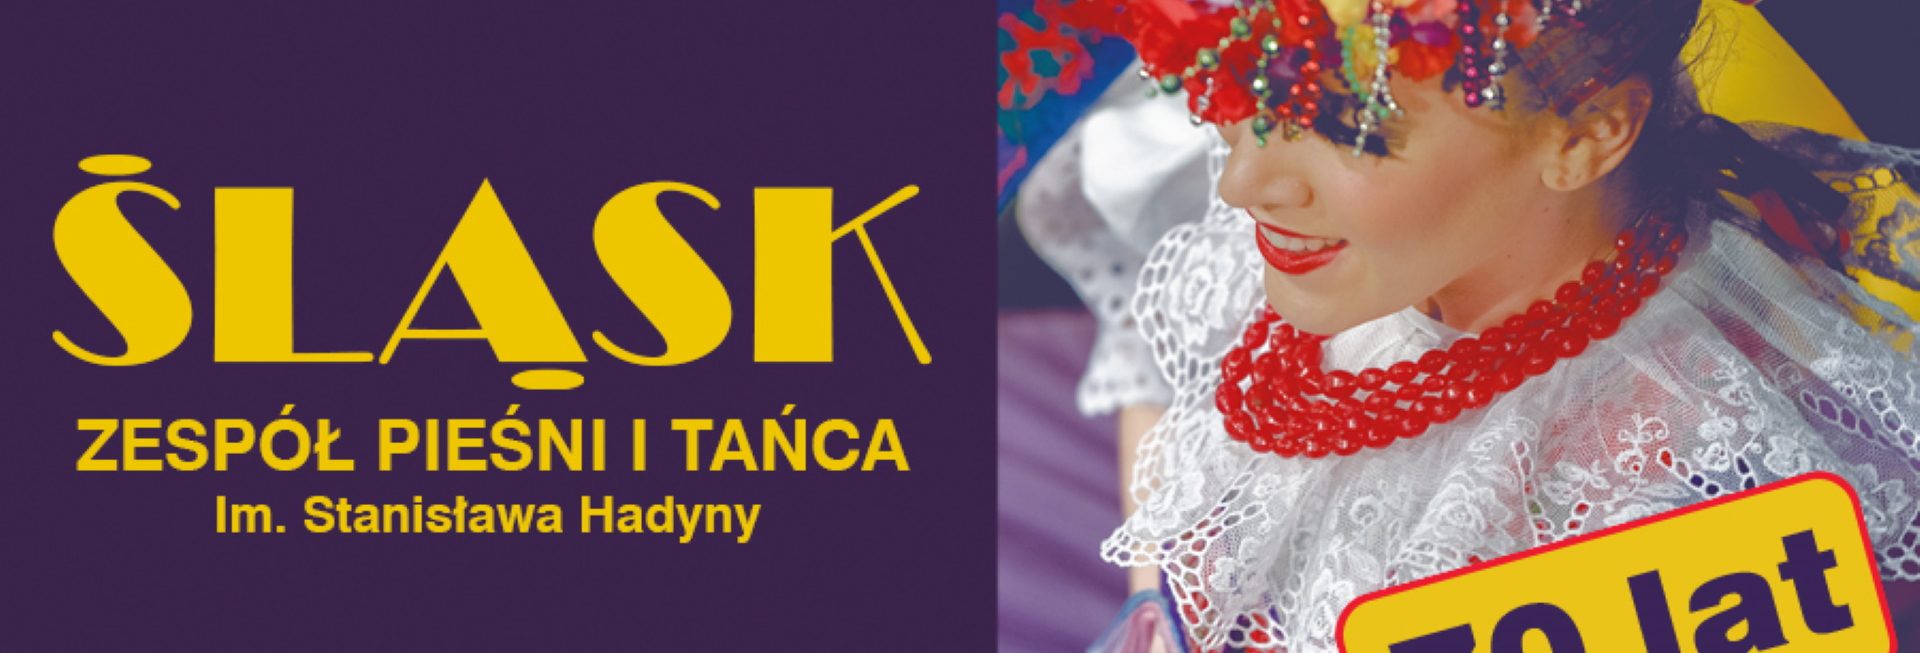 Plakat graficzny zapraszający do Olsztyna na występ z okazji 70-lecia Zespołu Pieśni i Tańca Śląsk – KONCERT JUBILEUSZOWY organizowany w Warmińsko-Mazurskiej Filharmonii w Olsztynie.